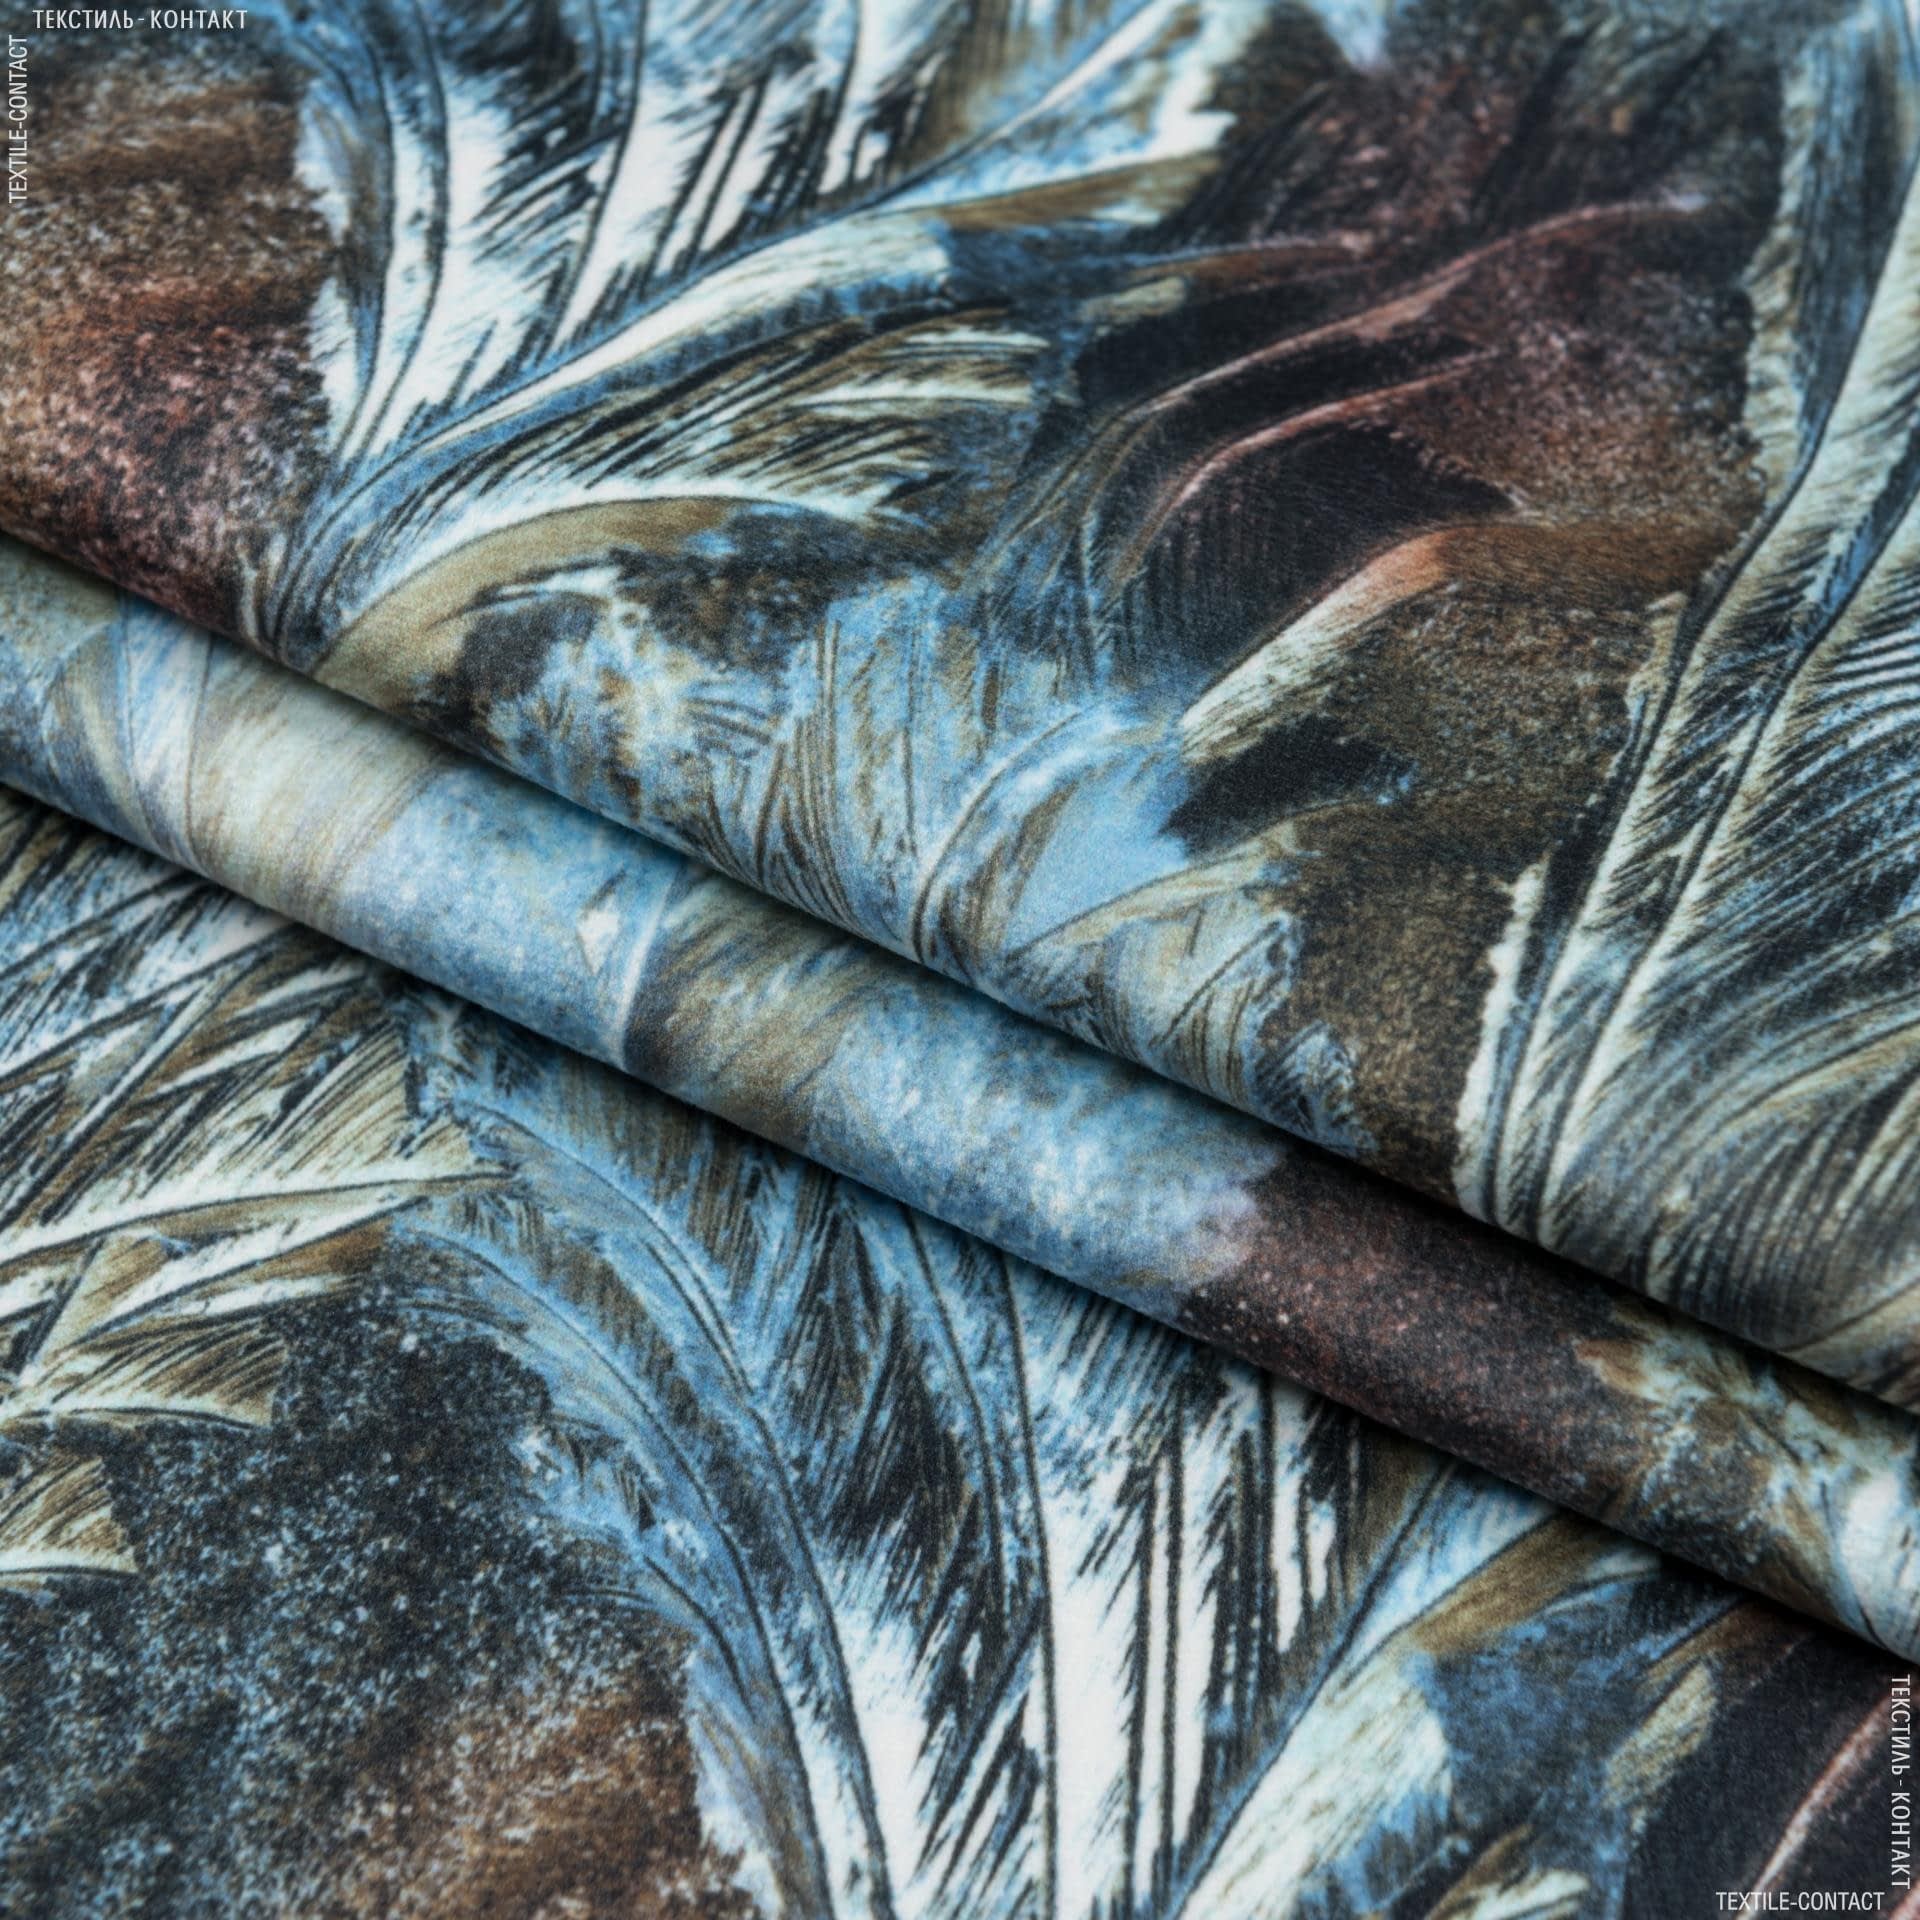 Ткани портьерные ткани - Декоративная ткань фарид степная трава/ farid  голубой,коричневый